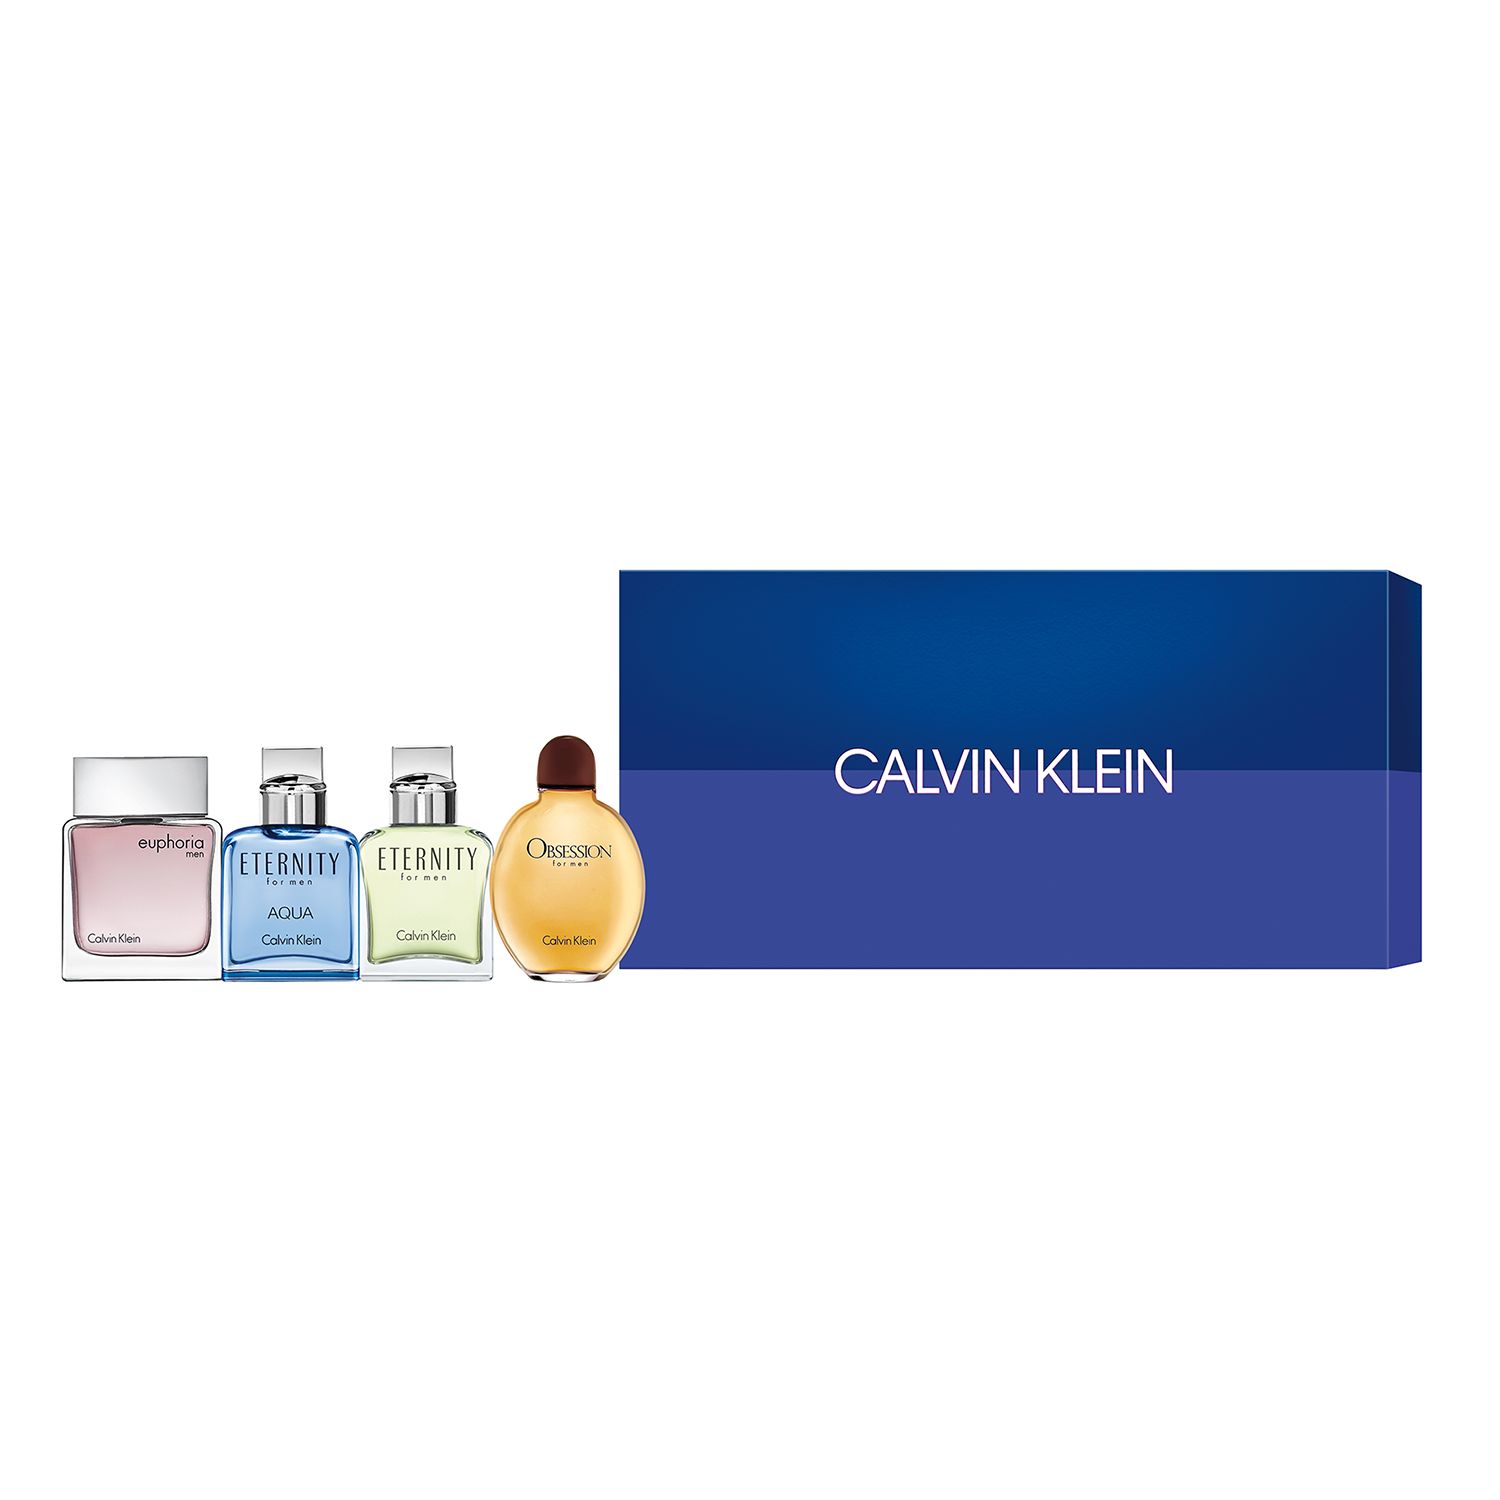 calvin klein perfume set of 4